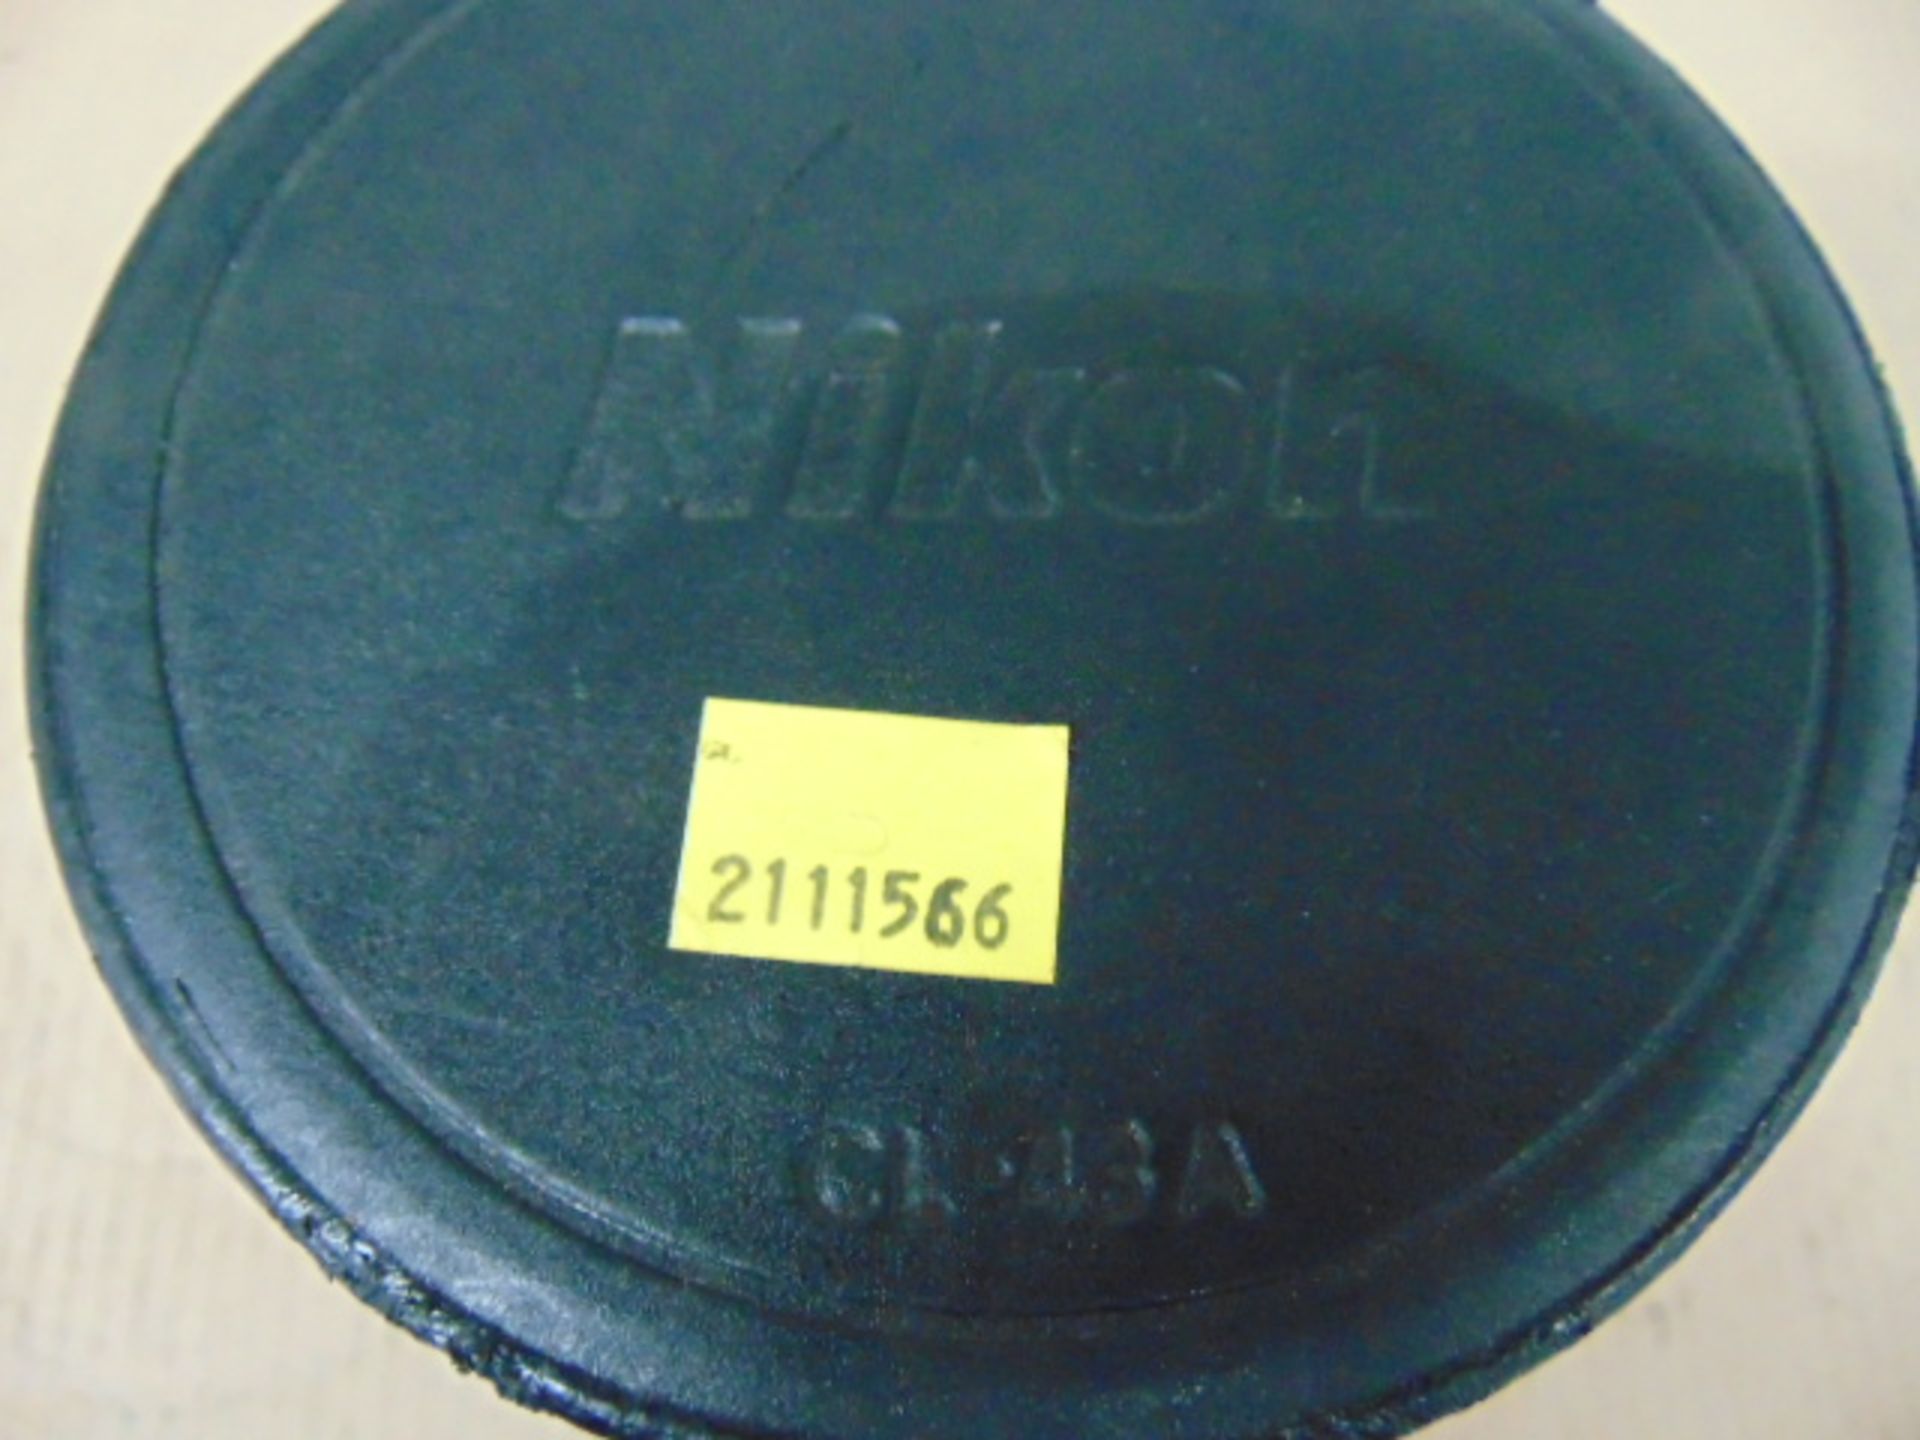 Nikon ED AF Nikkor 80-200mm 1:2.8 D Lense with Leather Carry Case - Image 9 of 11